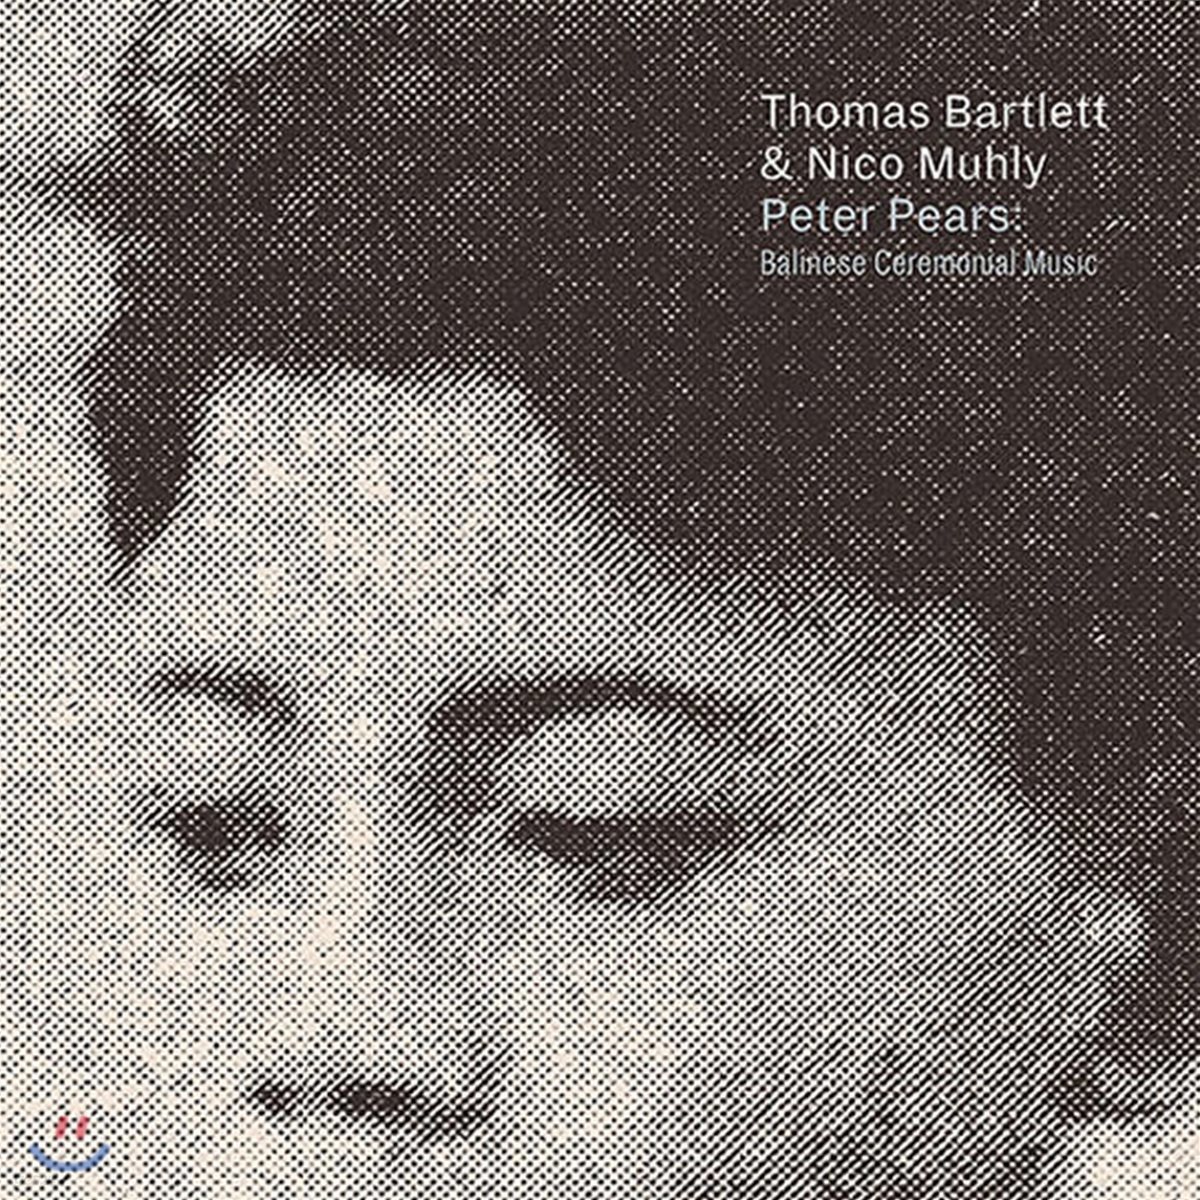 토마스 바틀렛 / 니코 뮬리 콜라보 (Thomas Bartlett / Nico Muhly - Peter Pears : Balinese Ceremonial Music) 